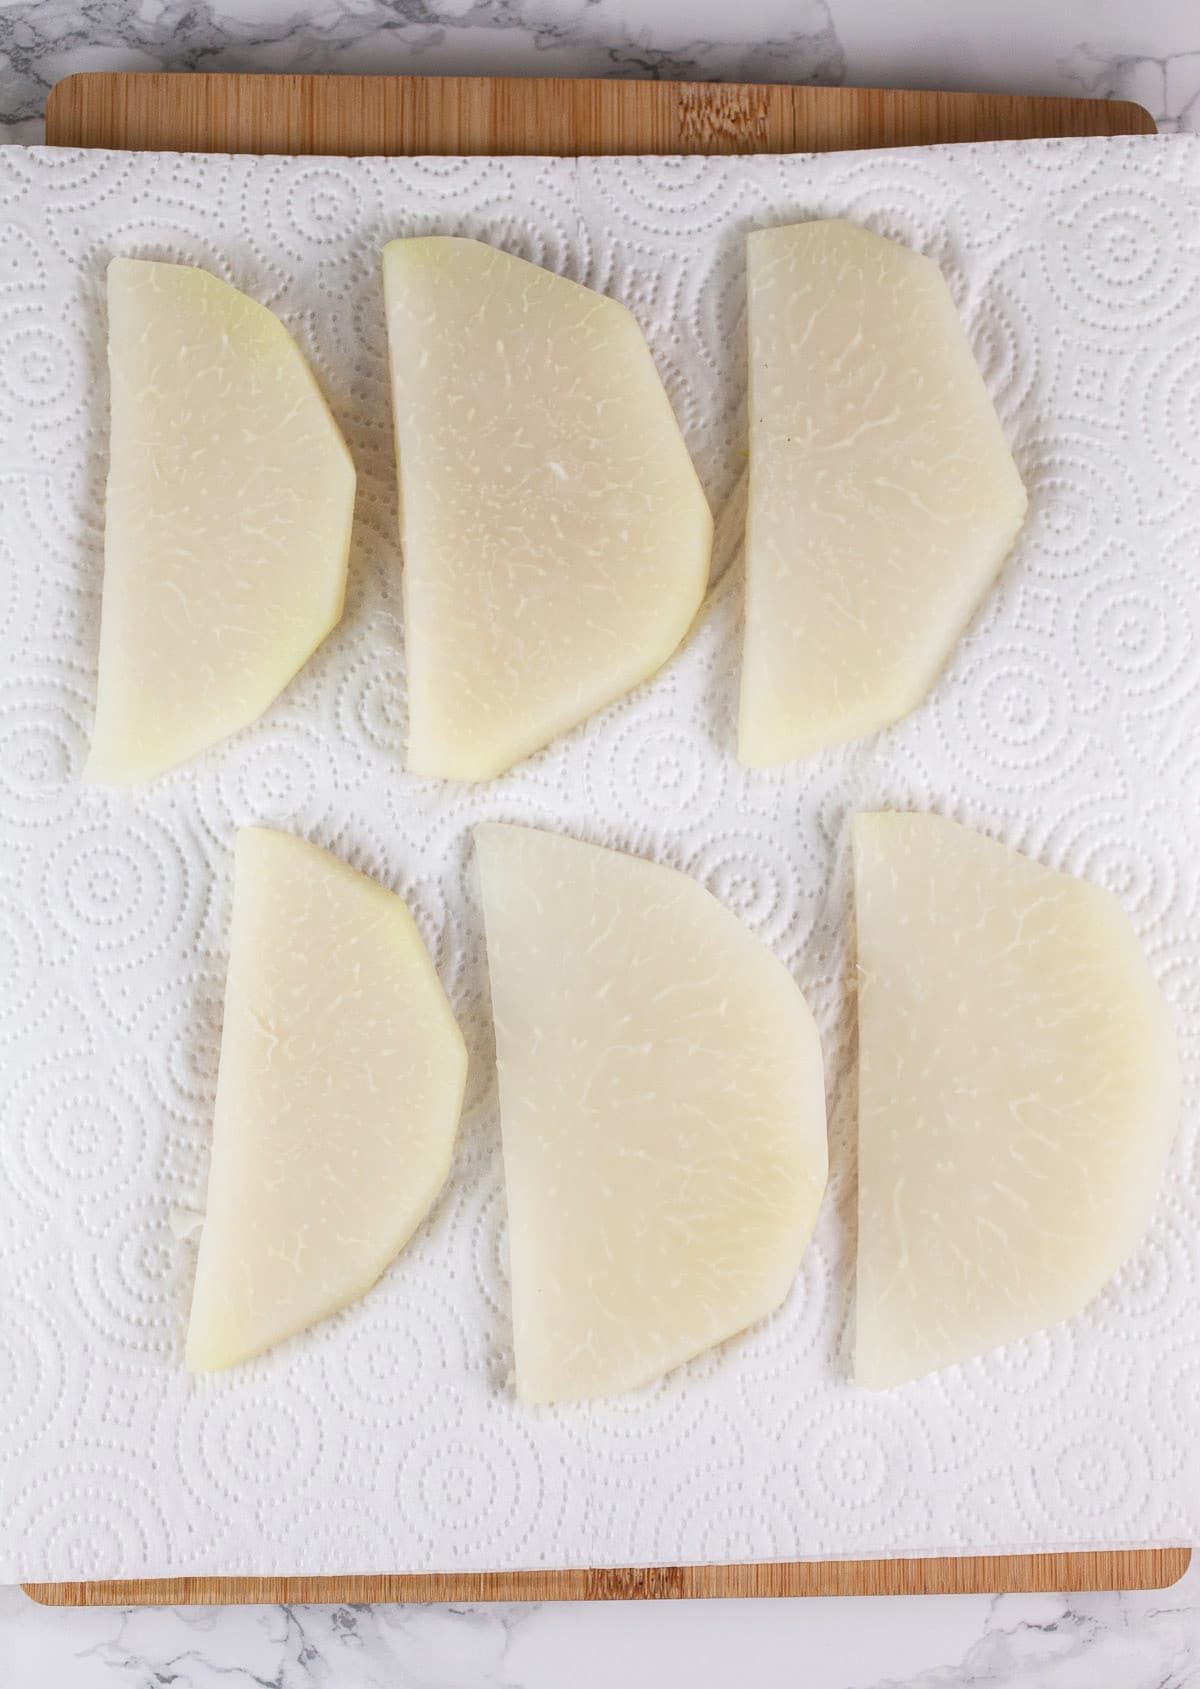 Parboiled kohlrabi slices on paper towel.